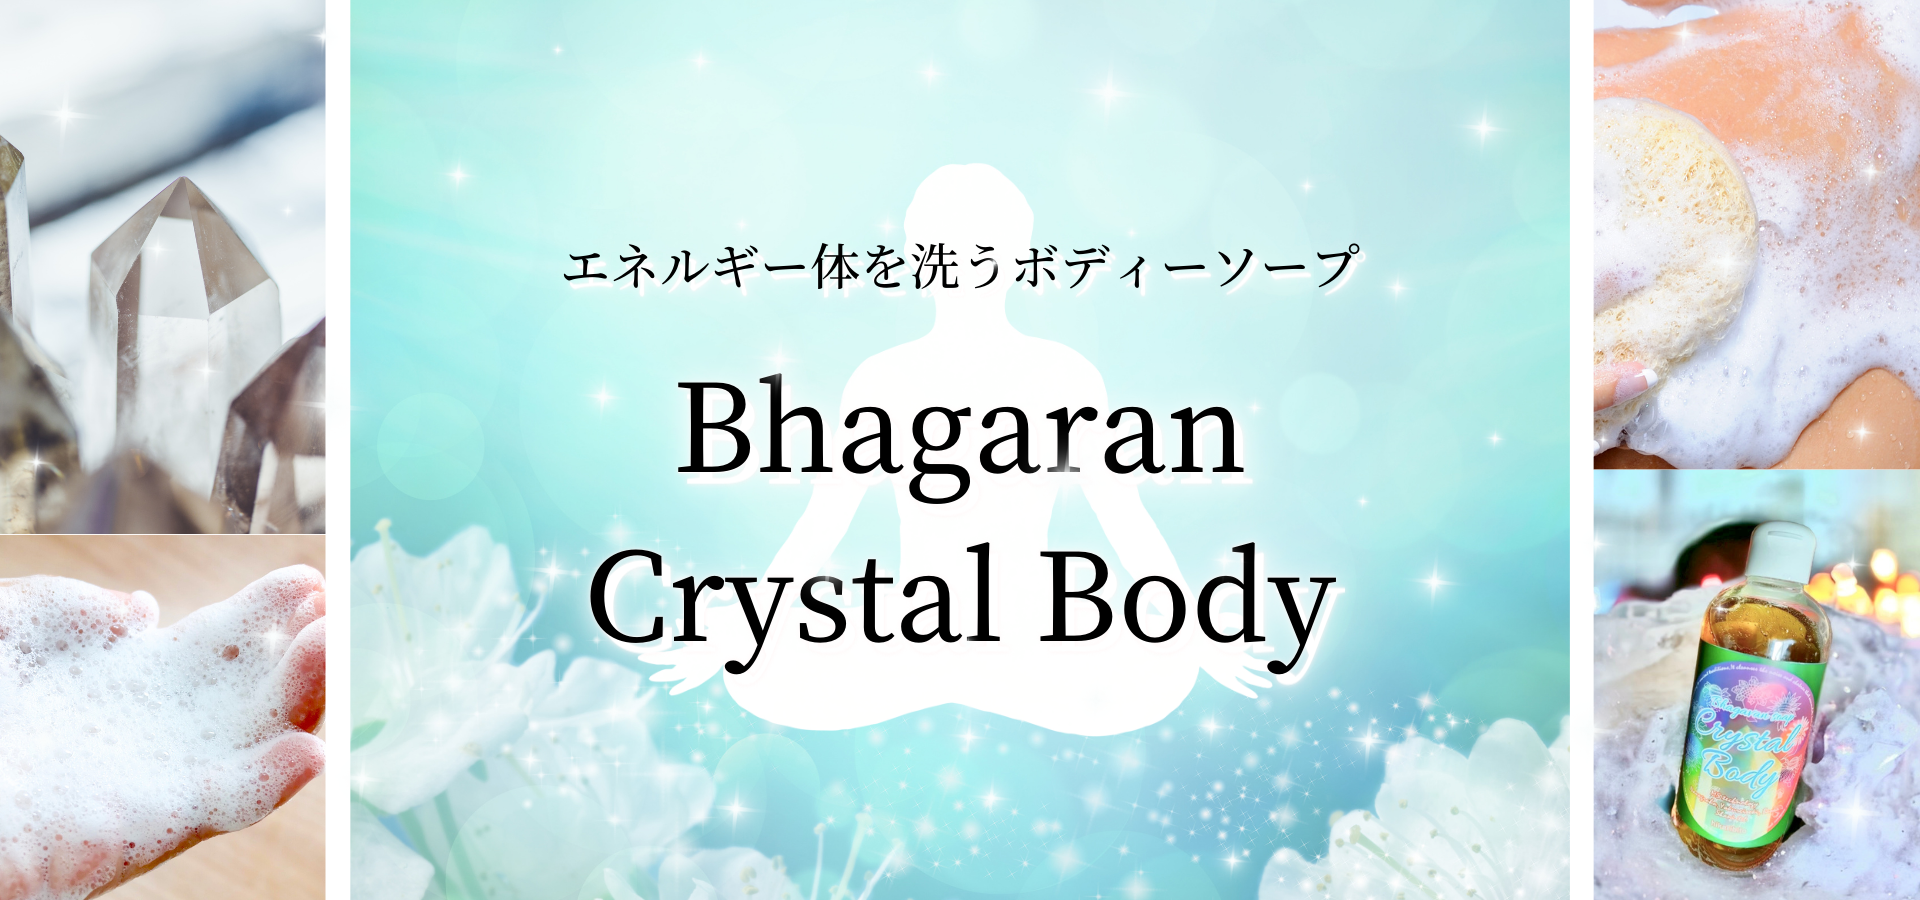 エネルギー体を洗うボディーソープ
Bhagaran Crystal Body